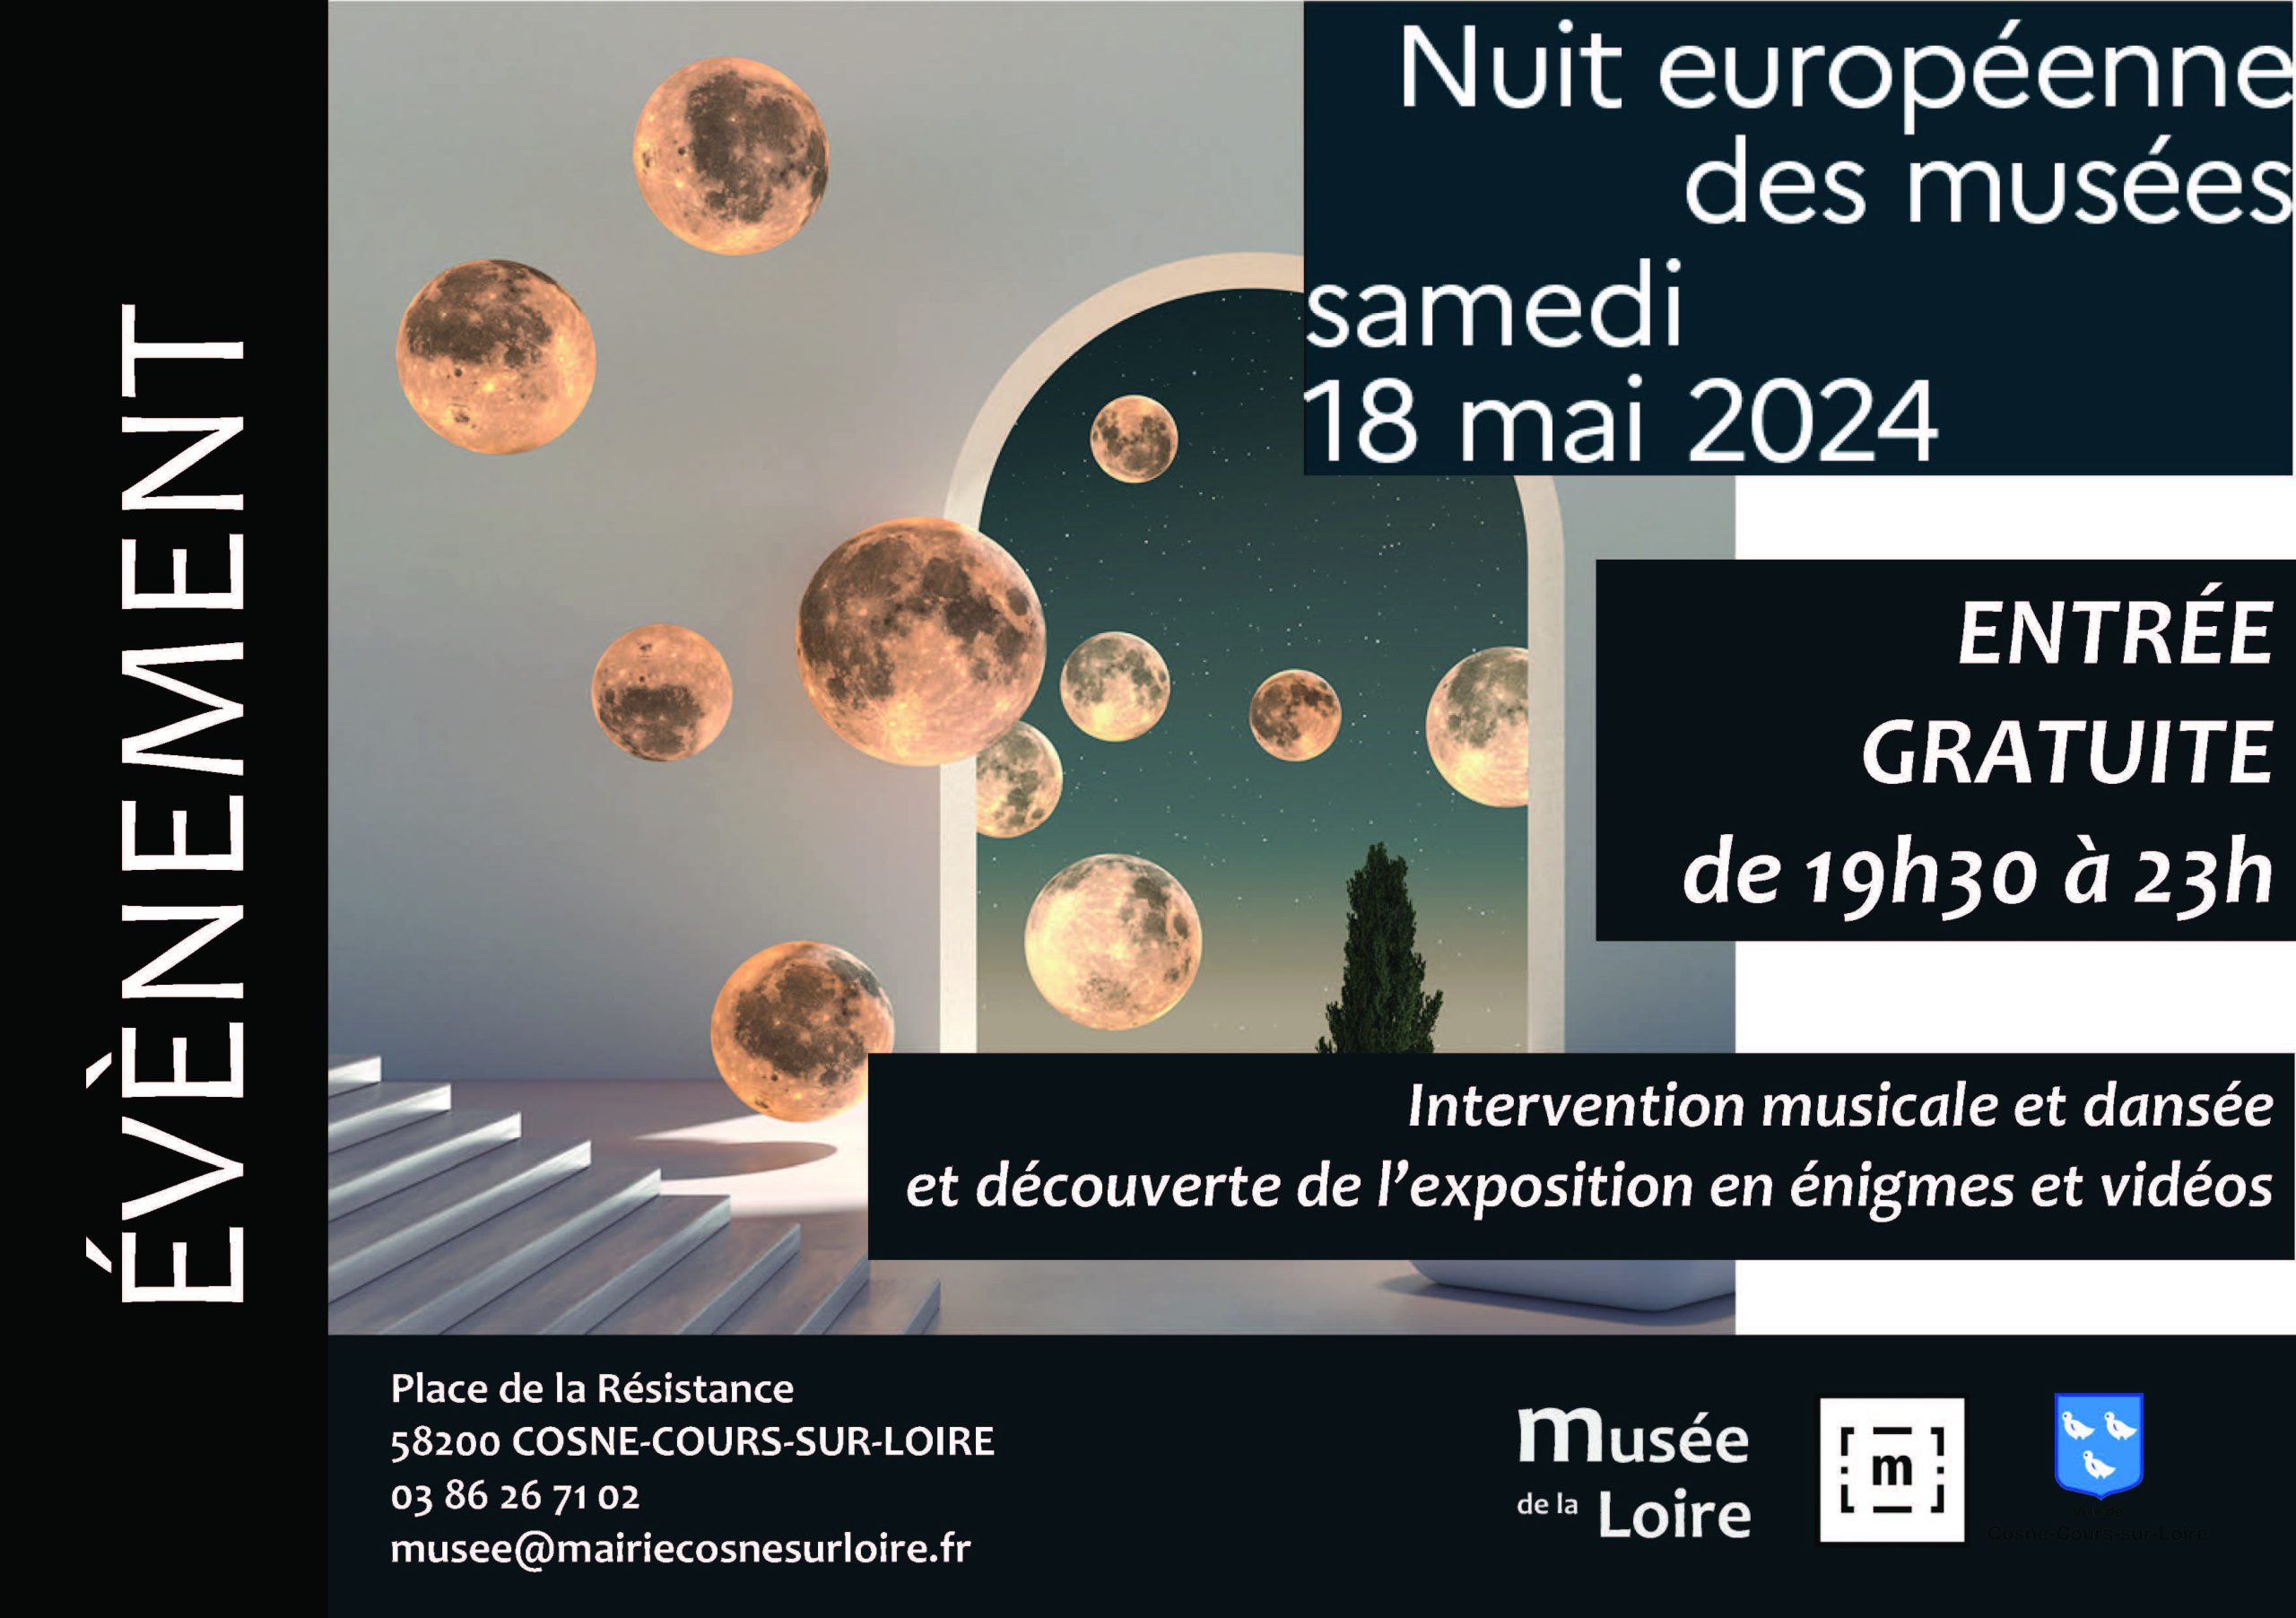 Nuit européenne des musées au Musée de la Loire de Cosne-Cours-sur-Loire Samedi 18 mai 2024 de 19h30 à 23h GRATUIT